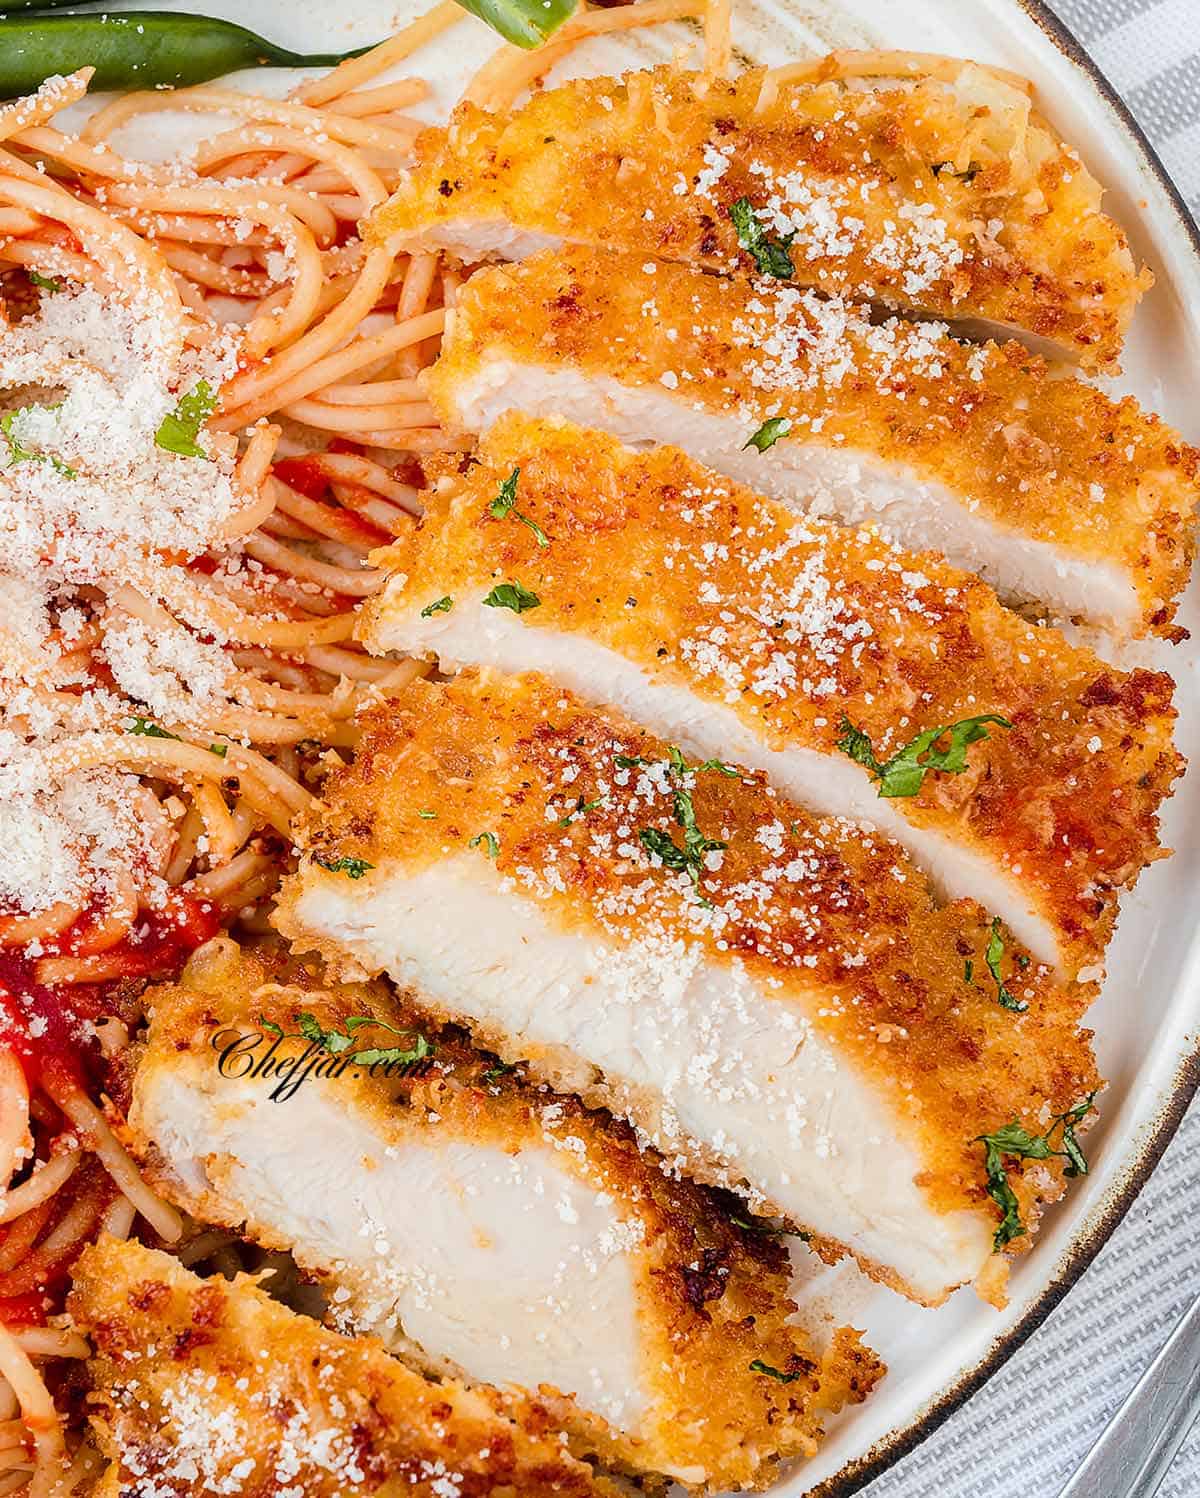 Sliced chicken Romano with spaghetti